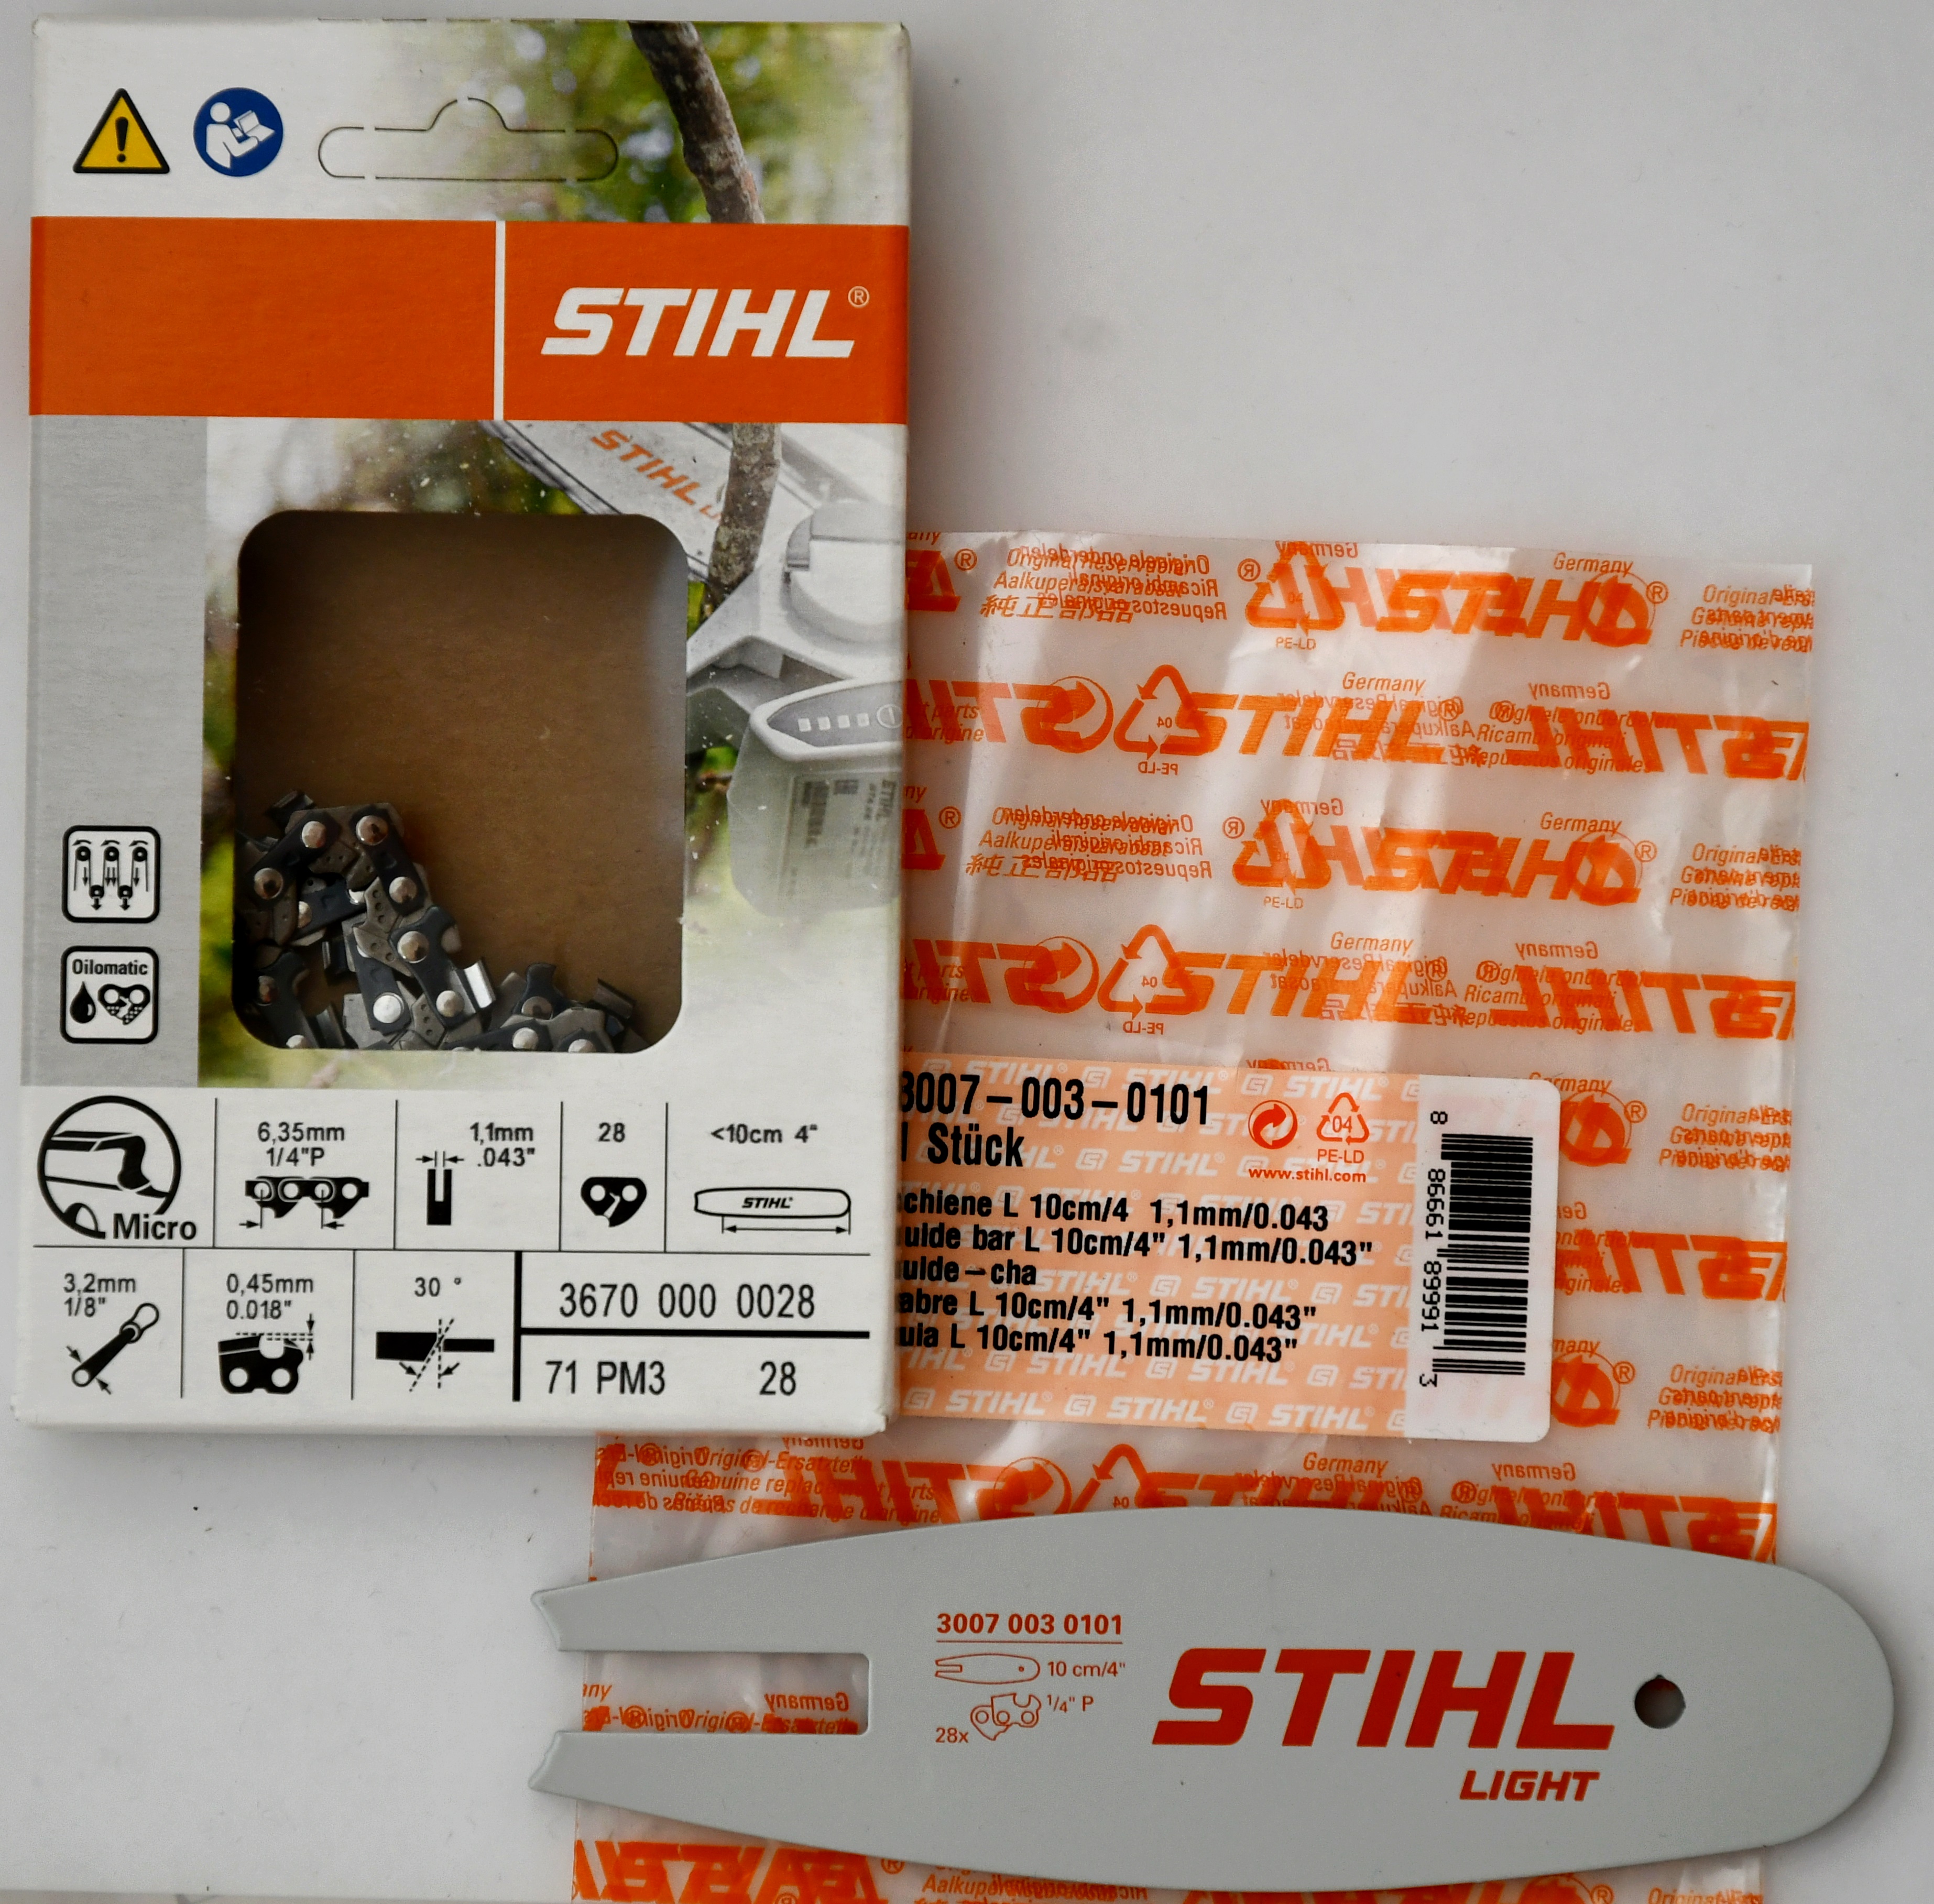 STIHL 30070030101 original Schiene Länge 10 cm/4' für GTA 26+Kette Sägekette 28TG PM3 für Stihl 1/4' 36700000028